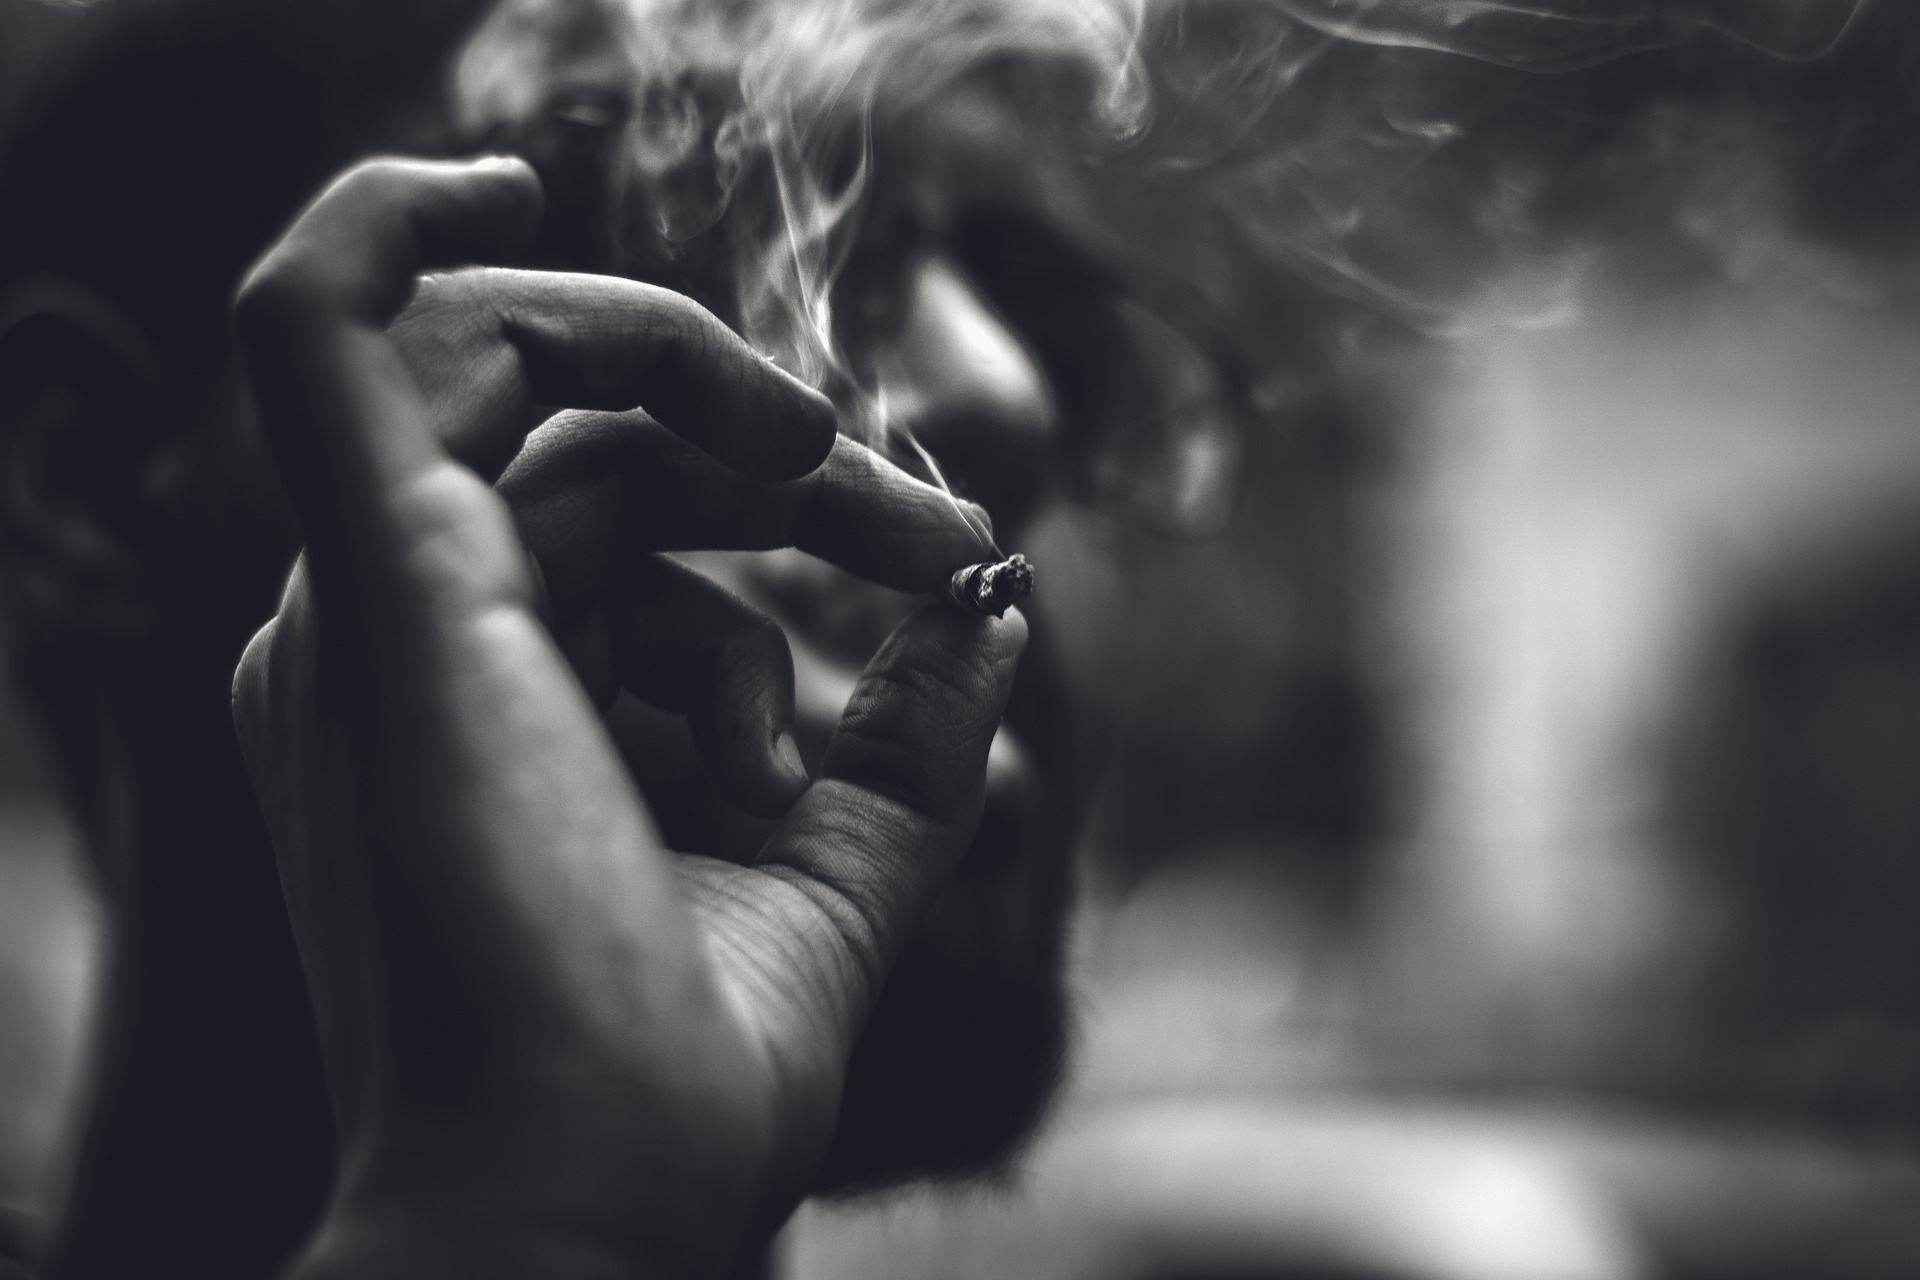 Sucht: Eine Hand hält eine Zigarette. Es qualmt. Bild ist schwarz-weiß